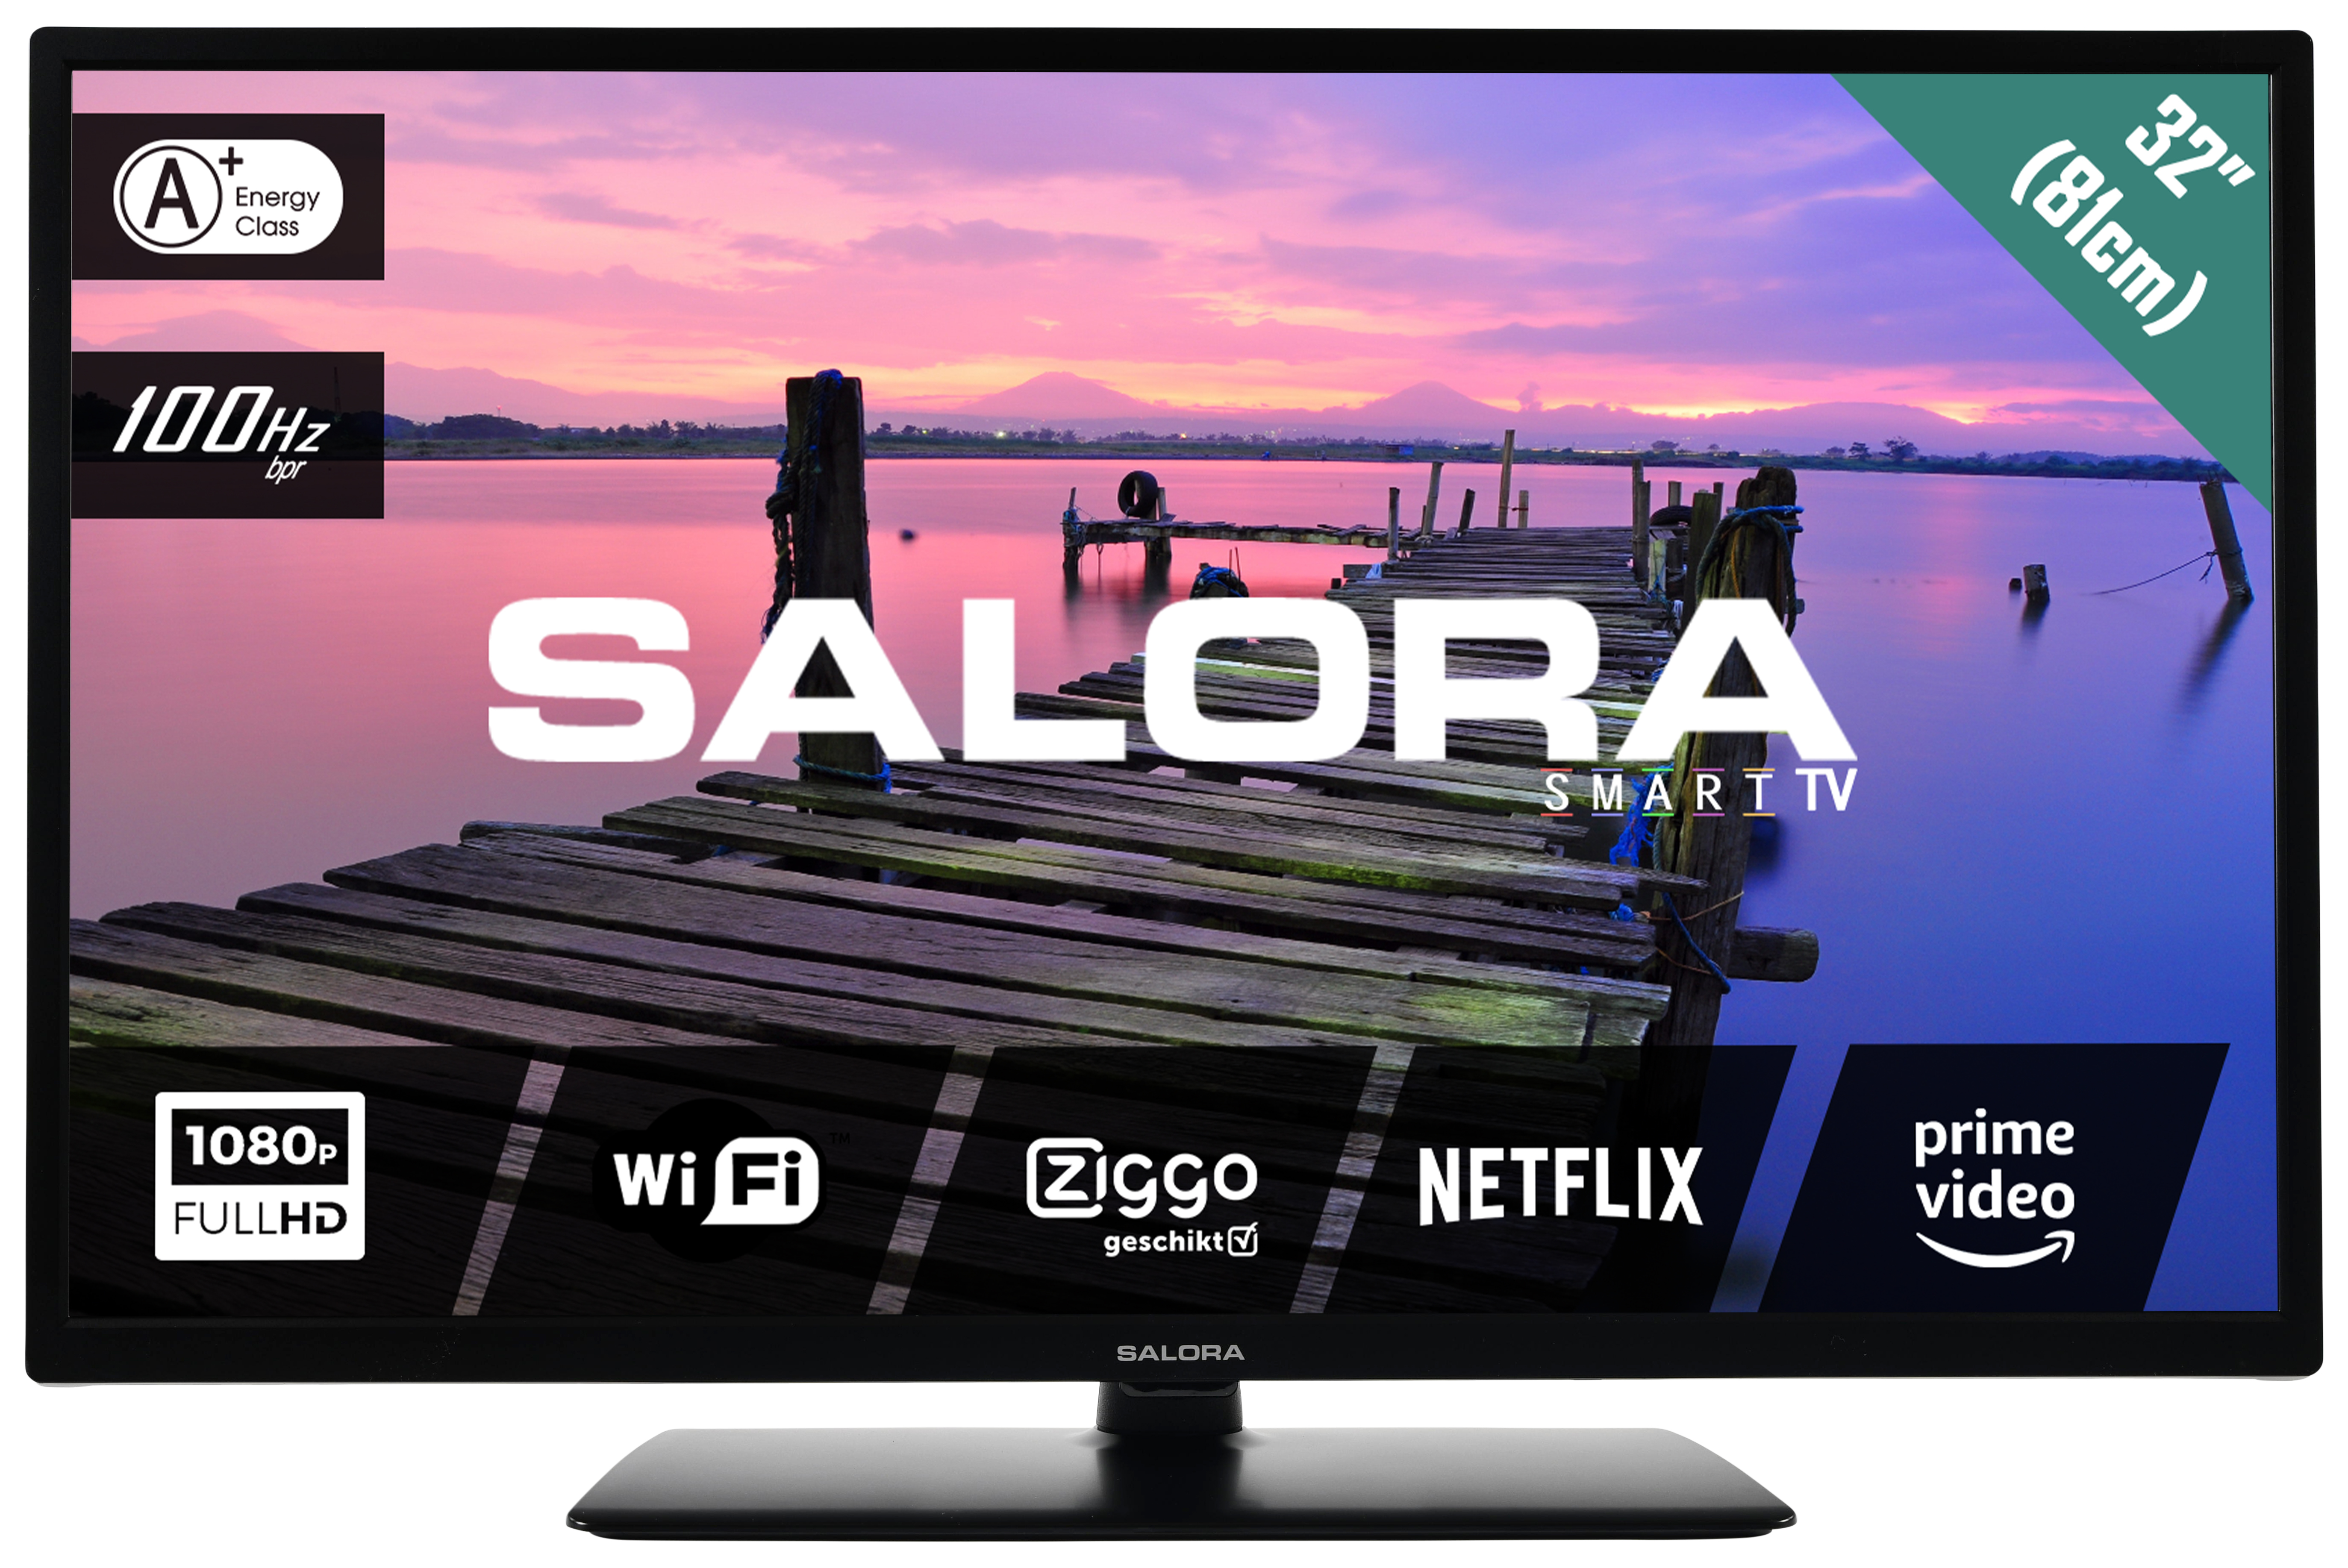 Salora 3704 series 32FSB3704 TV